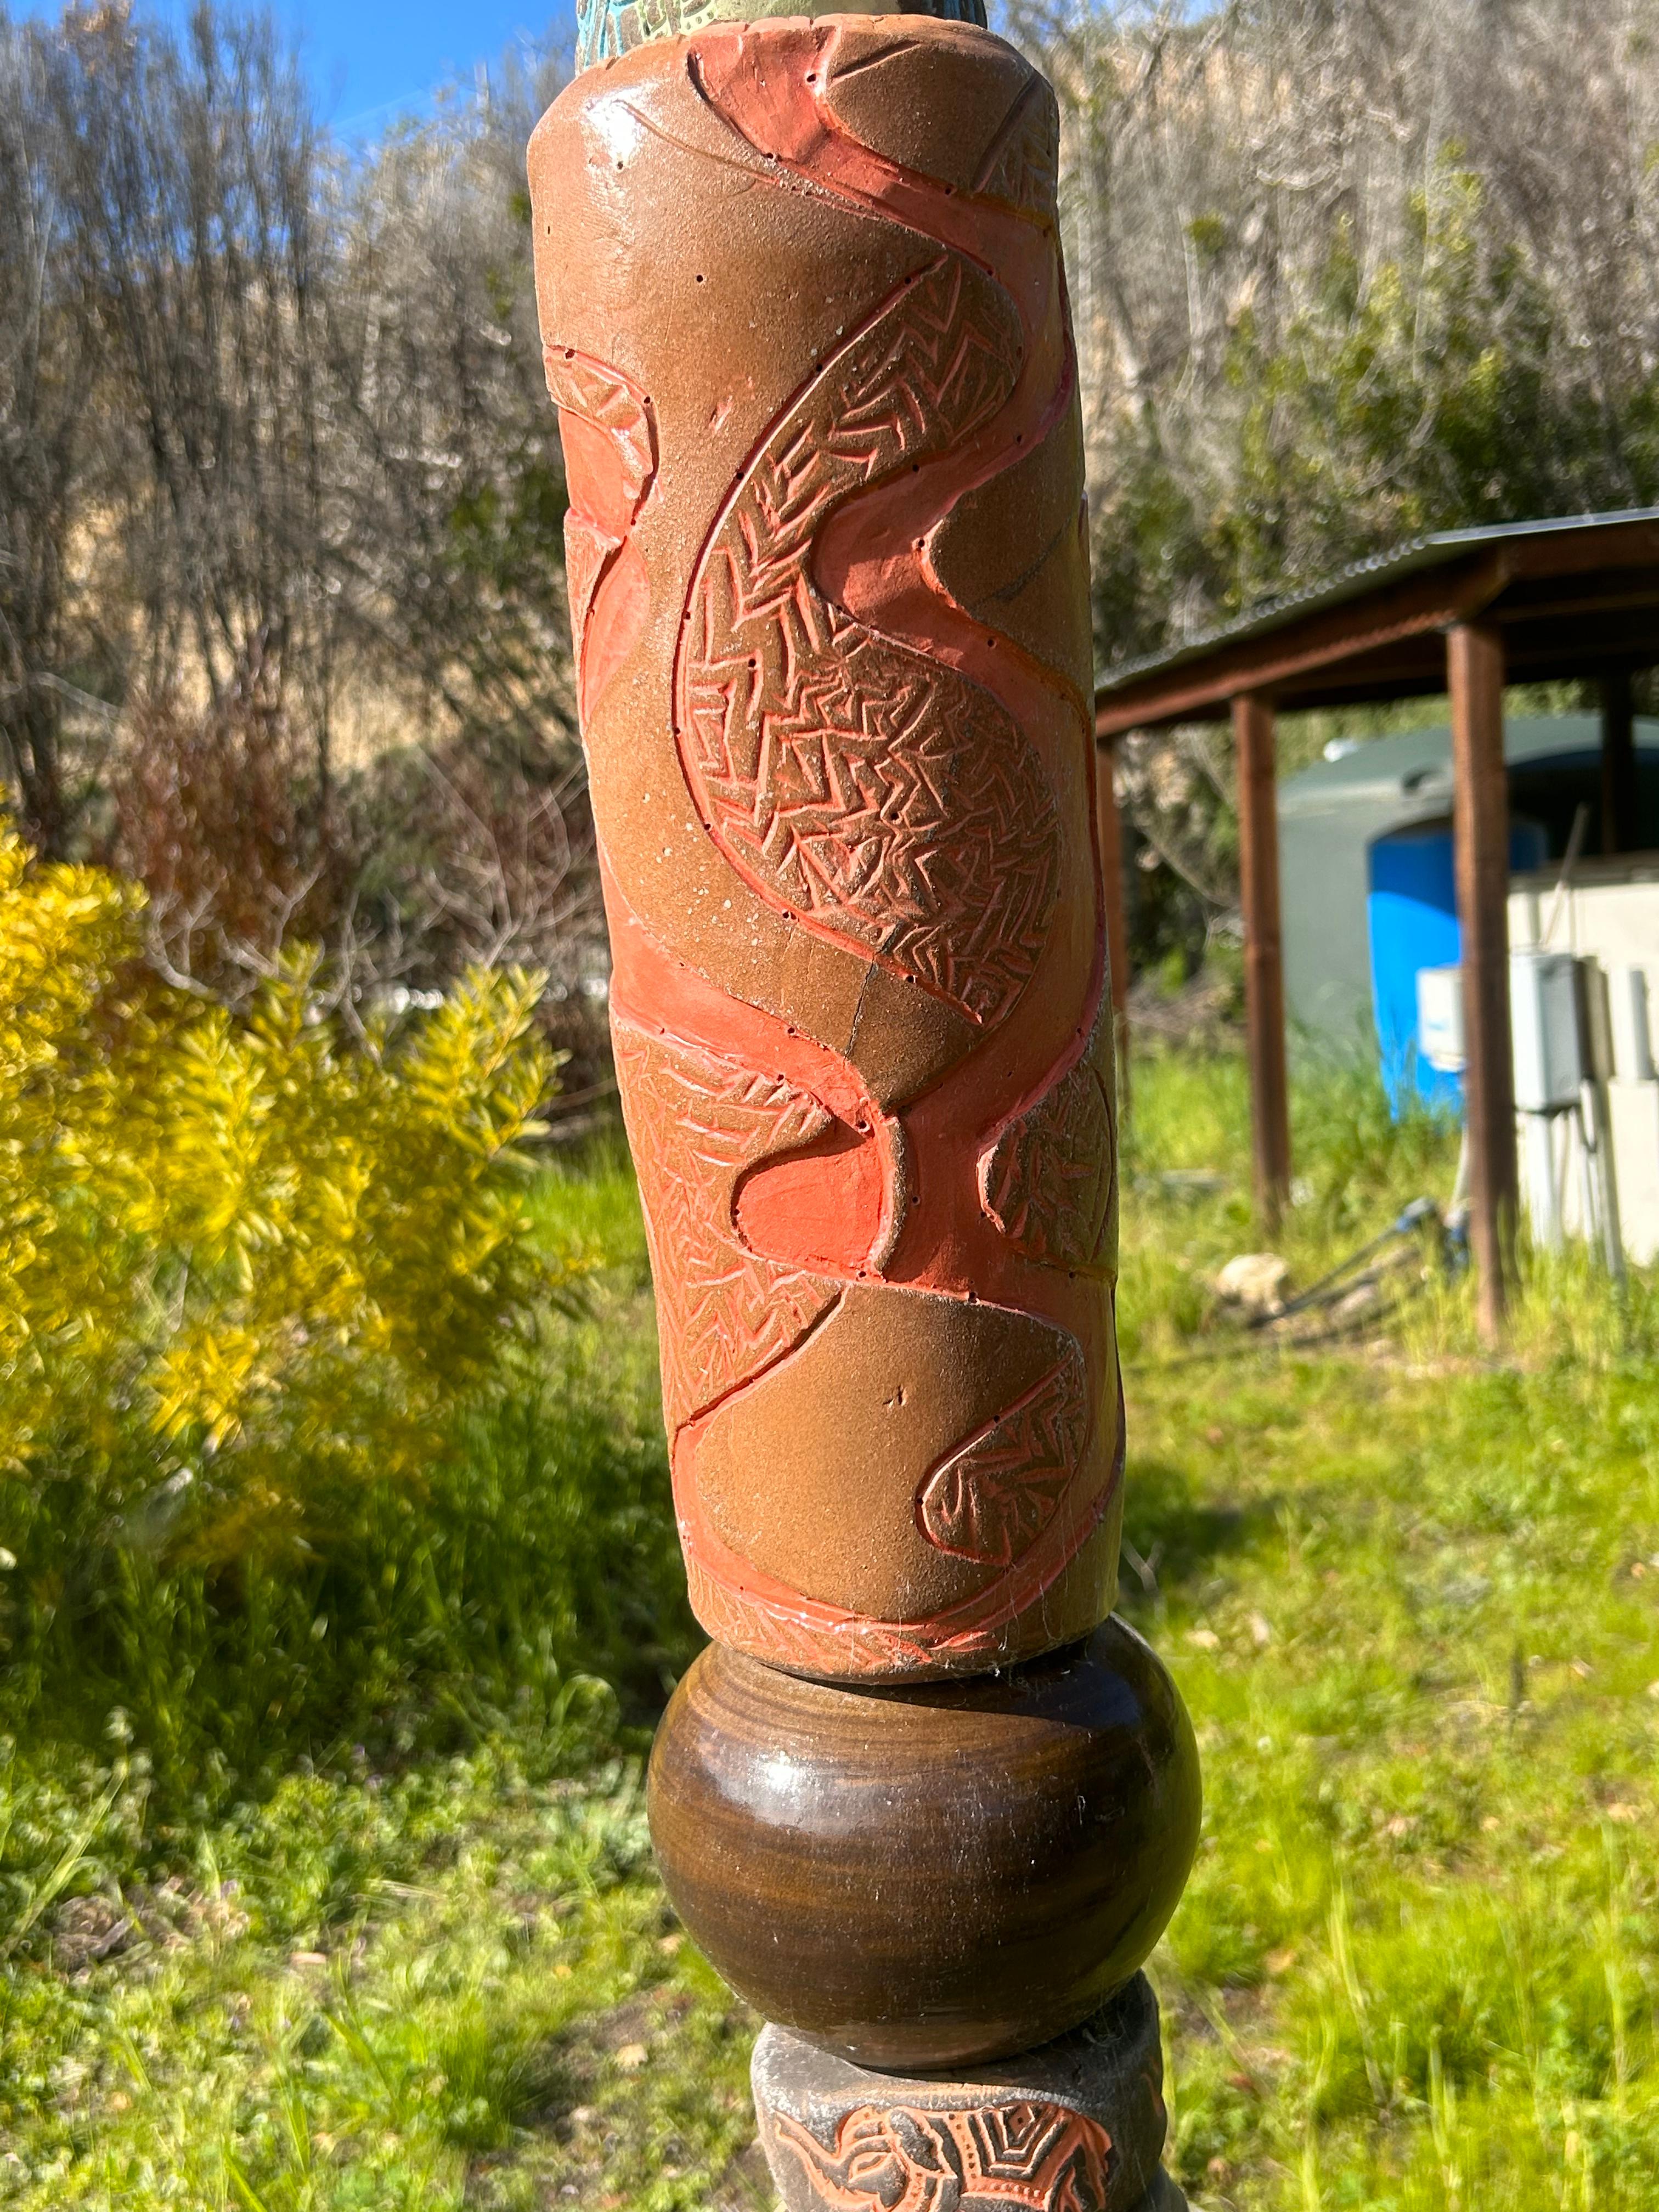 clay garden totems